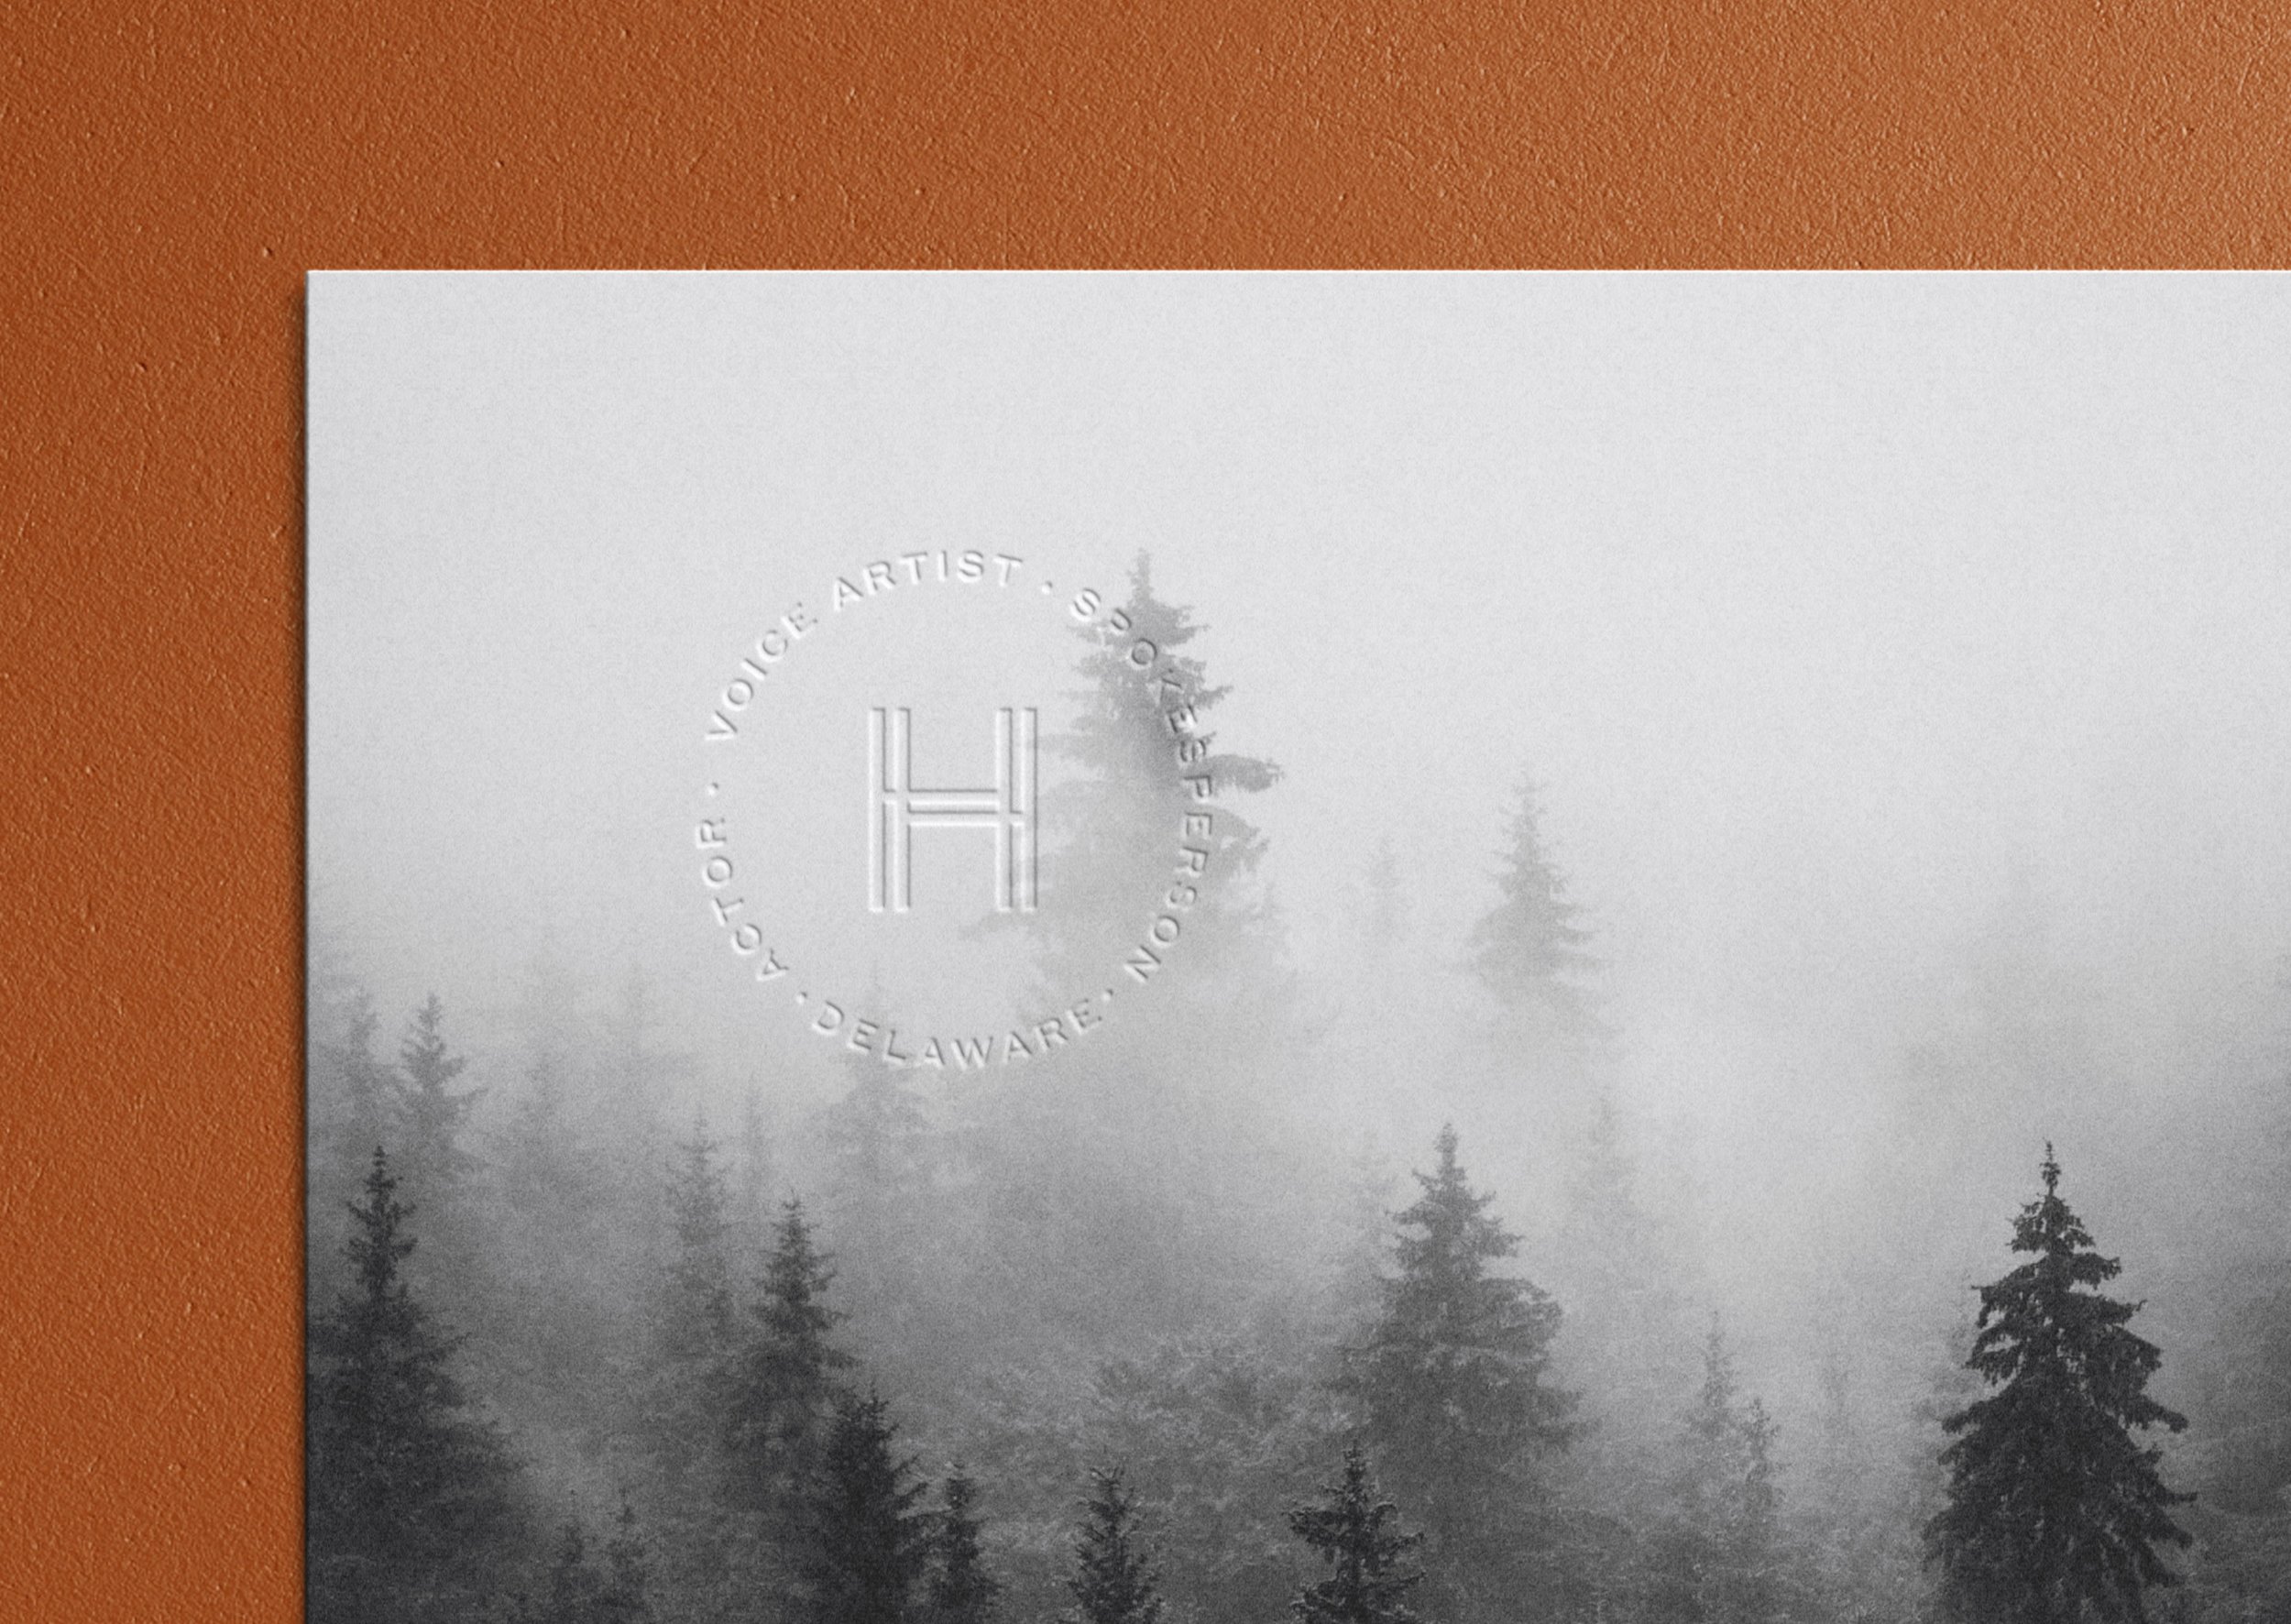 Sean-Haney-Embossed-Card-Alt-Circle-Logo-Mark-Forest-Branding.jpg